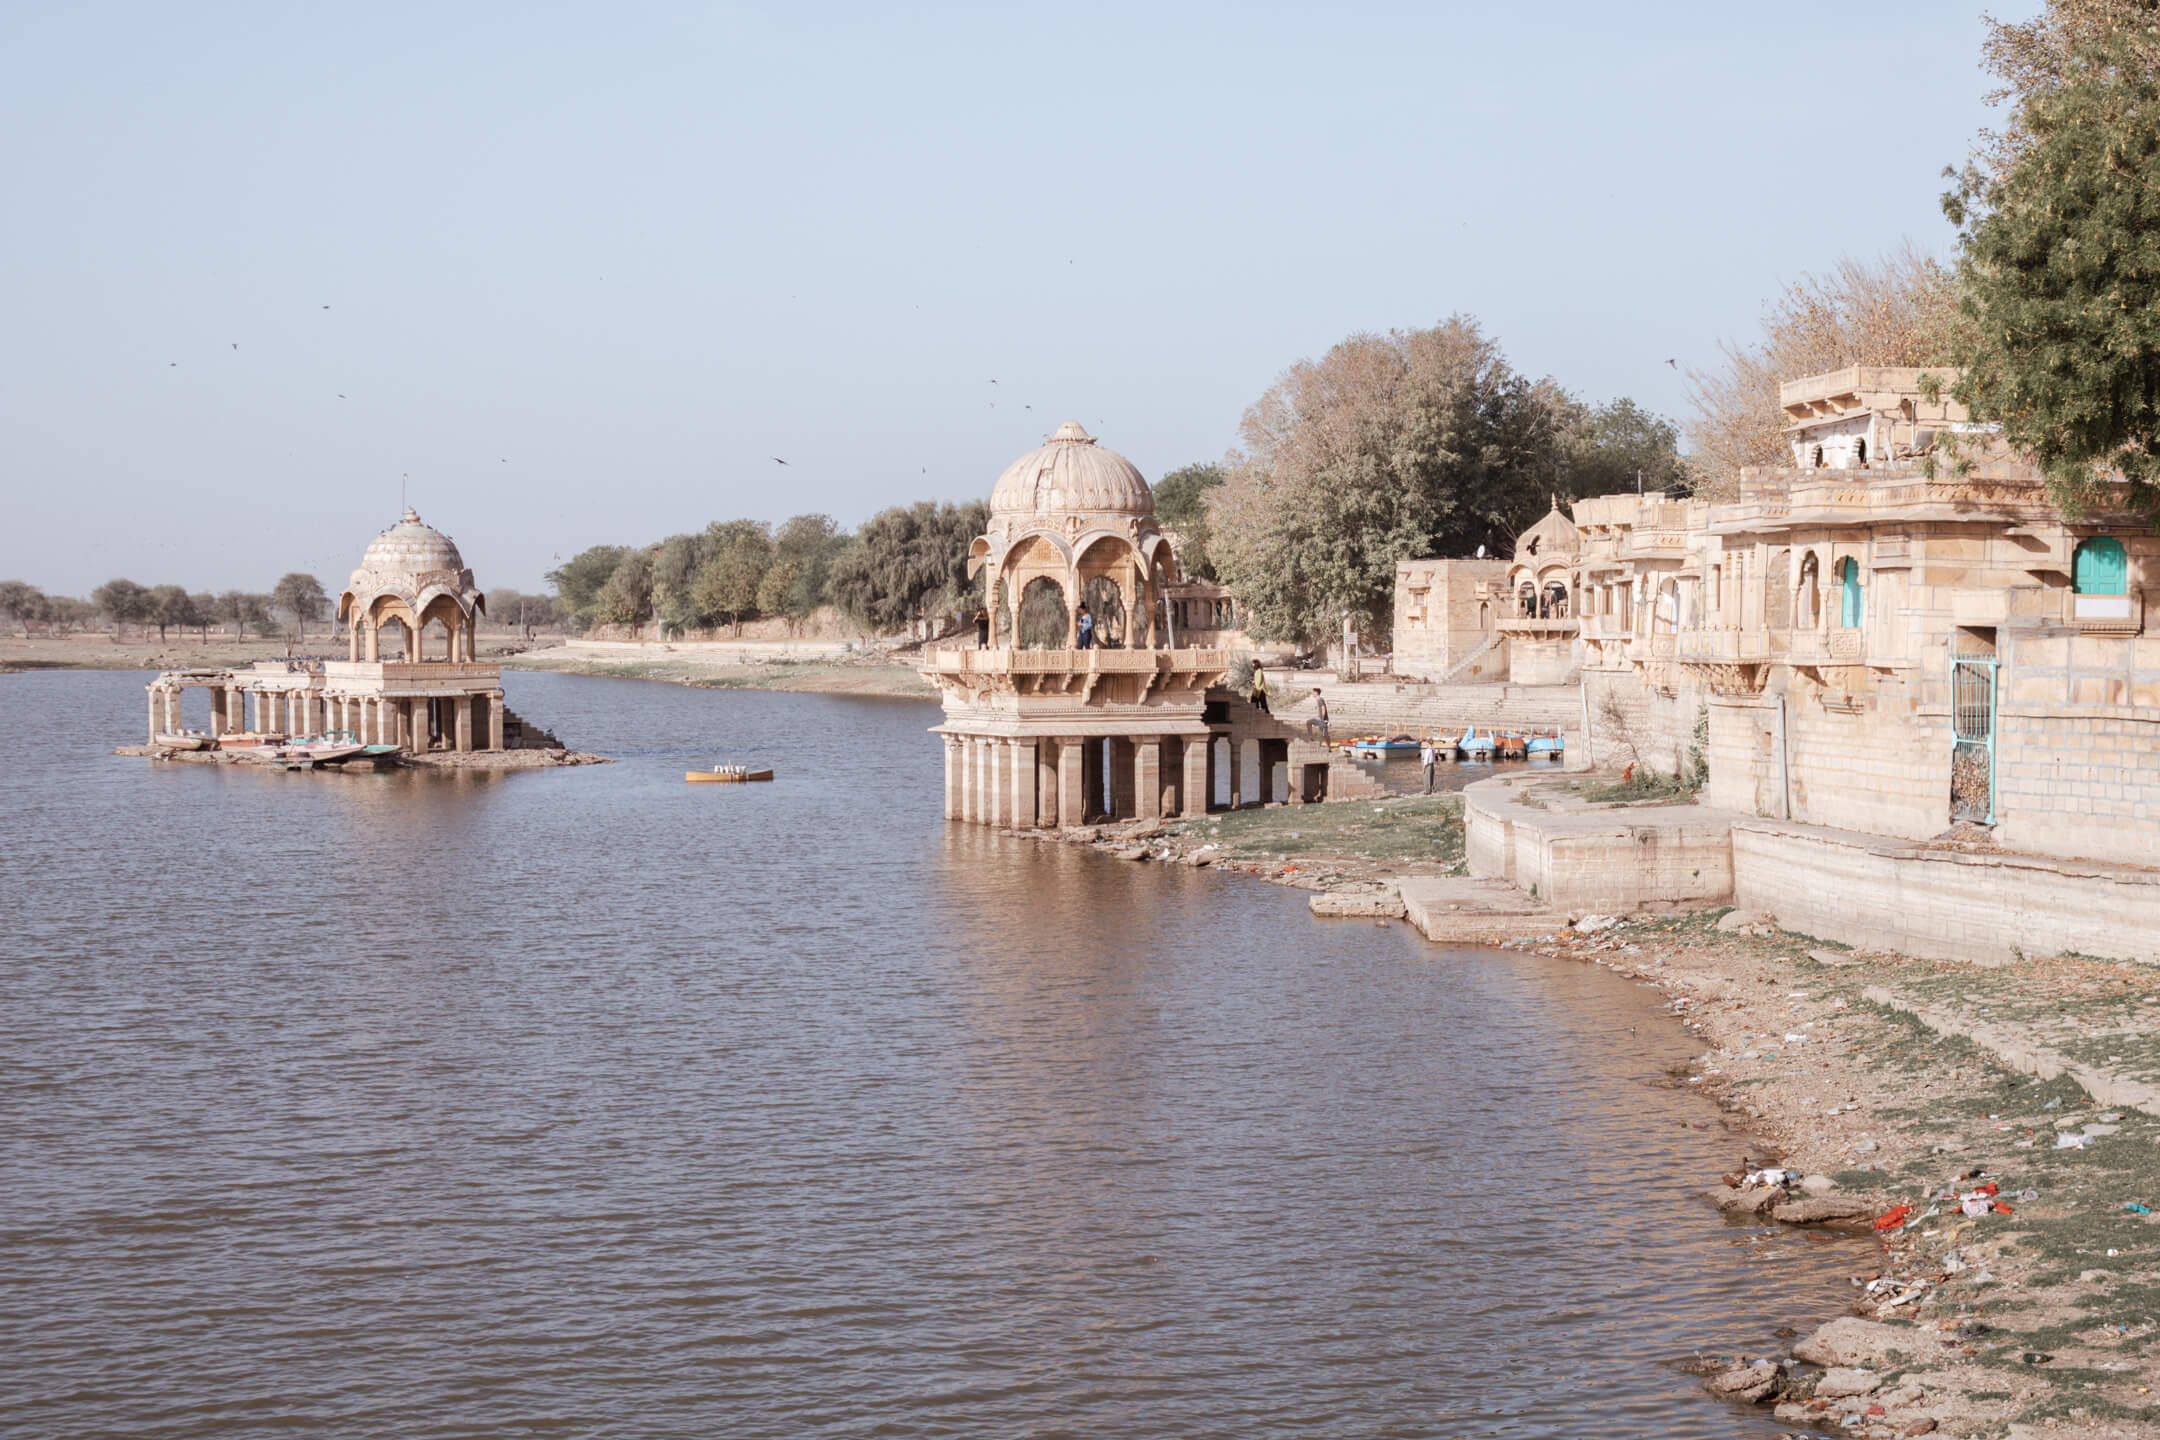 Jaisalmer Gadisar Lake - India